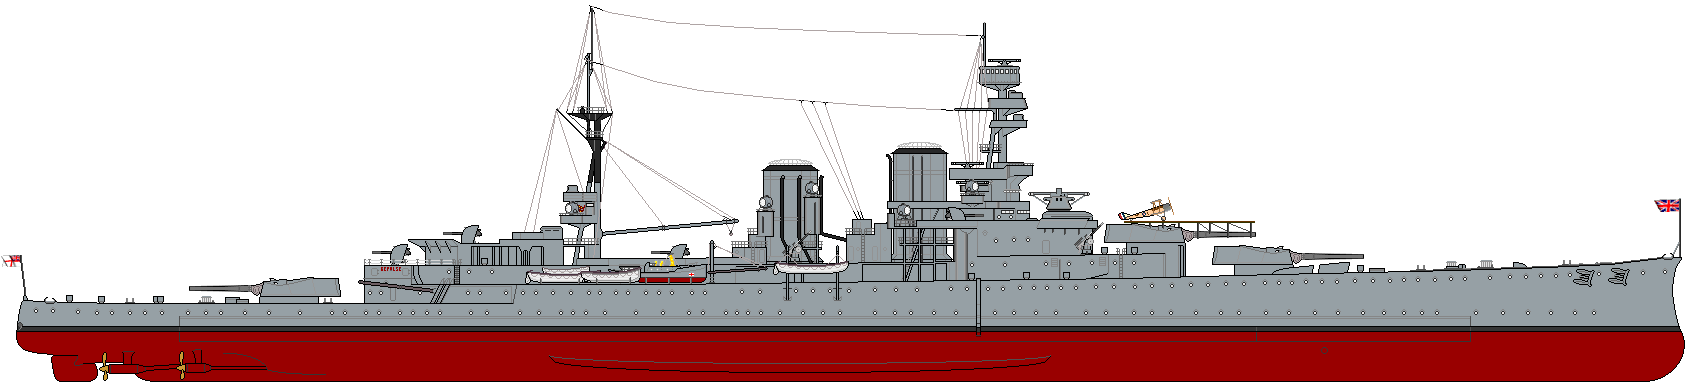 [Image: HMS_Repulse_%281919%29_profile_drawing.png]